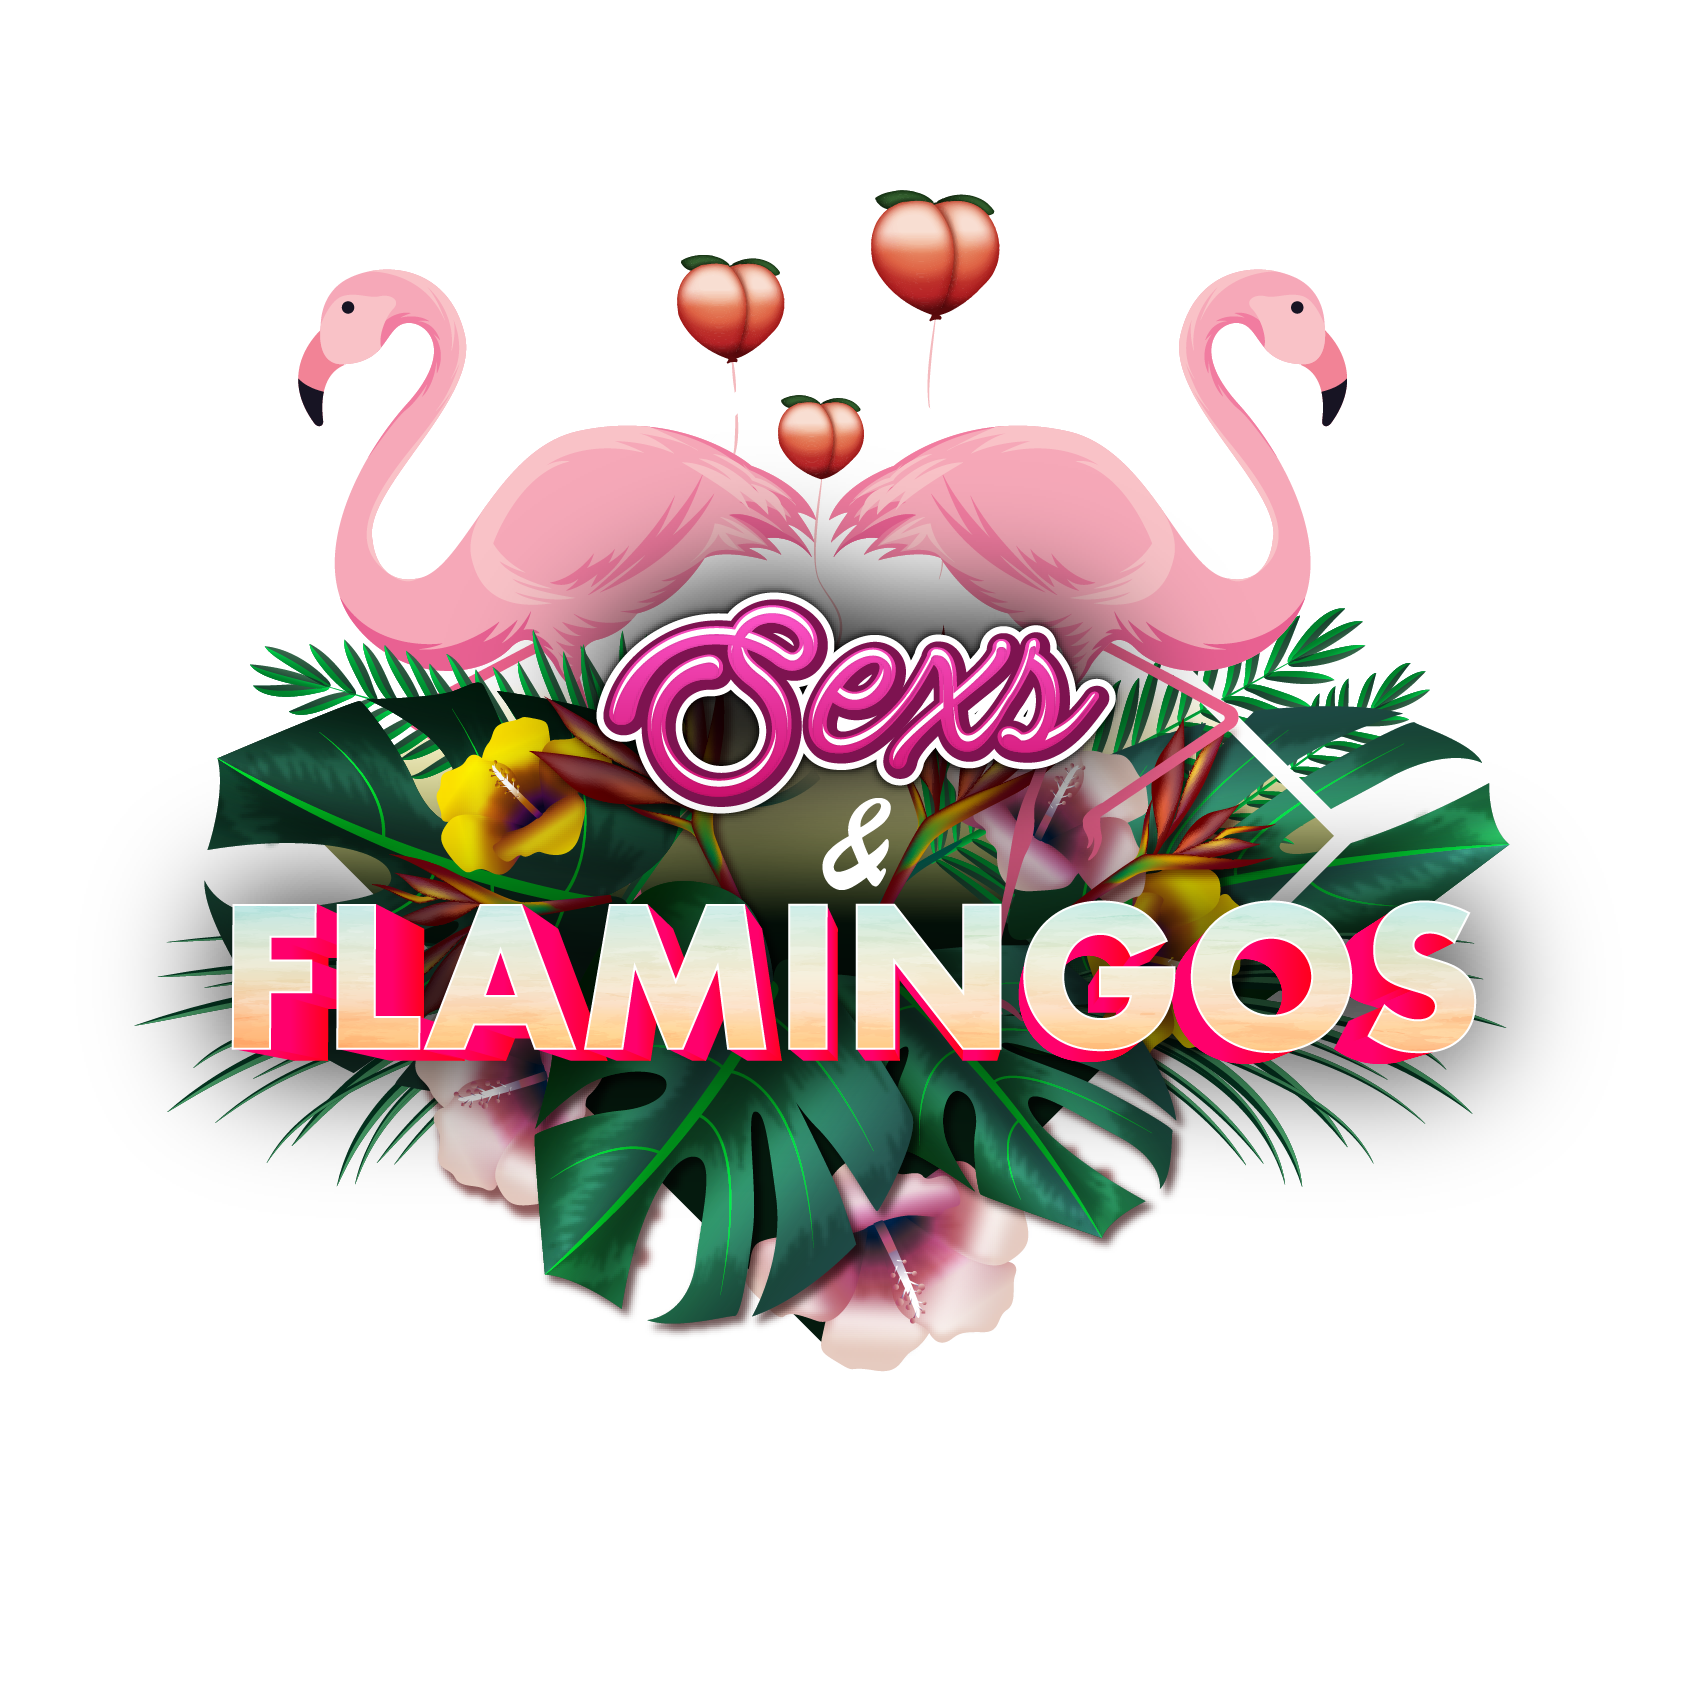 Sexs&Flamingos_final